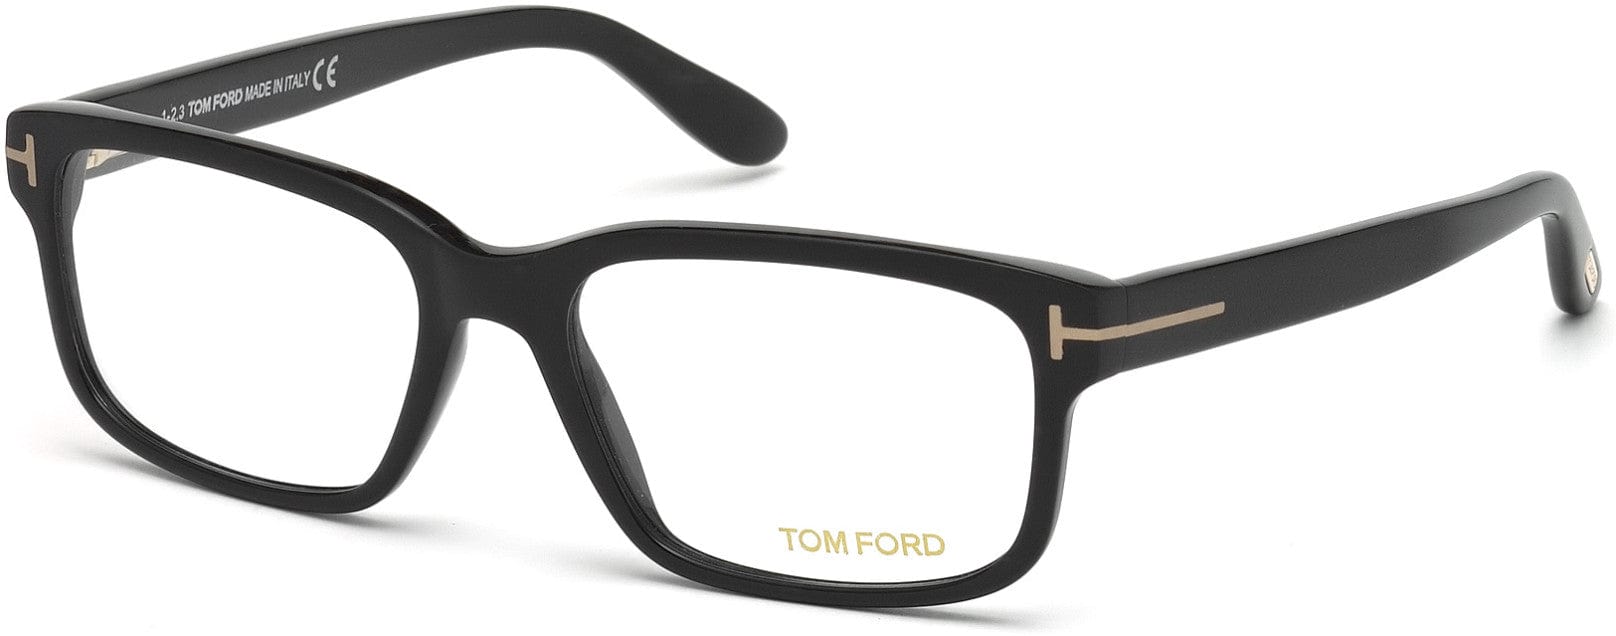 Tom Ford FT5313 Geometric Eyeglasses 002-002 - Matte Black